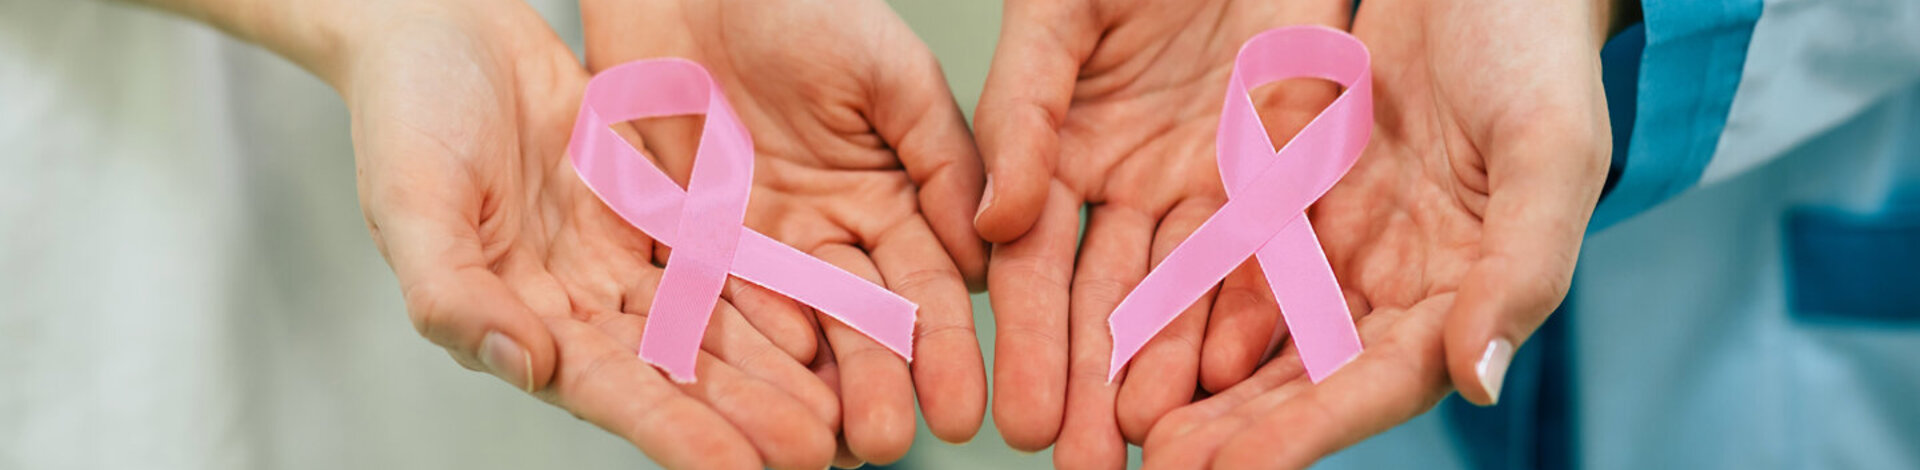 Zwei Frauen halten eine rosa Schleife in der Hand. Das Symbol steht für die Solidarität mit Frauen, die an Brustkrebs erkrankt sind oder ein höheres Brustkrebsrisiko haben.